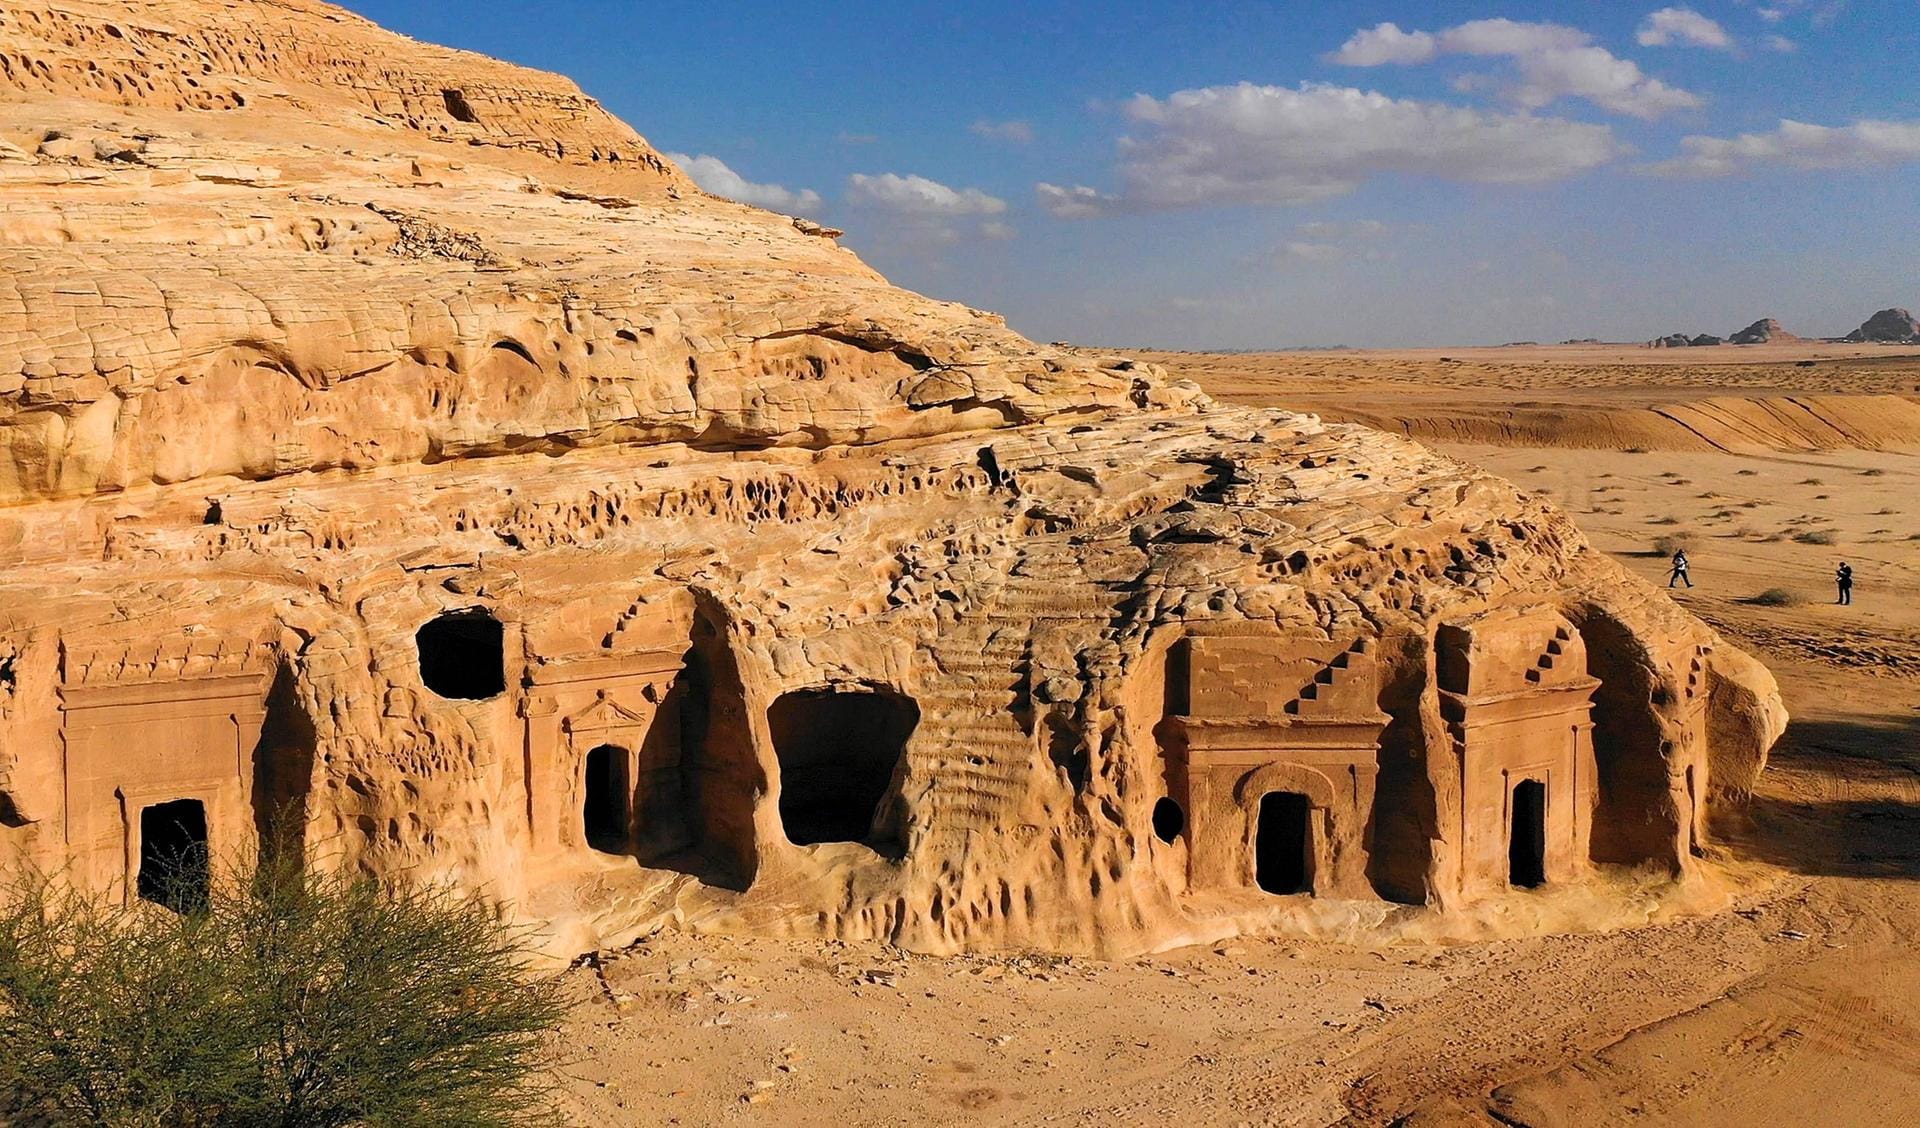 Die Ausgrabungsstätte bei Mada'in Salih: Hundert Felsengräber aus der Zeit der Nabatäer in der antiken Stadt Hegra können hier bestaunt werden.